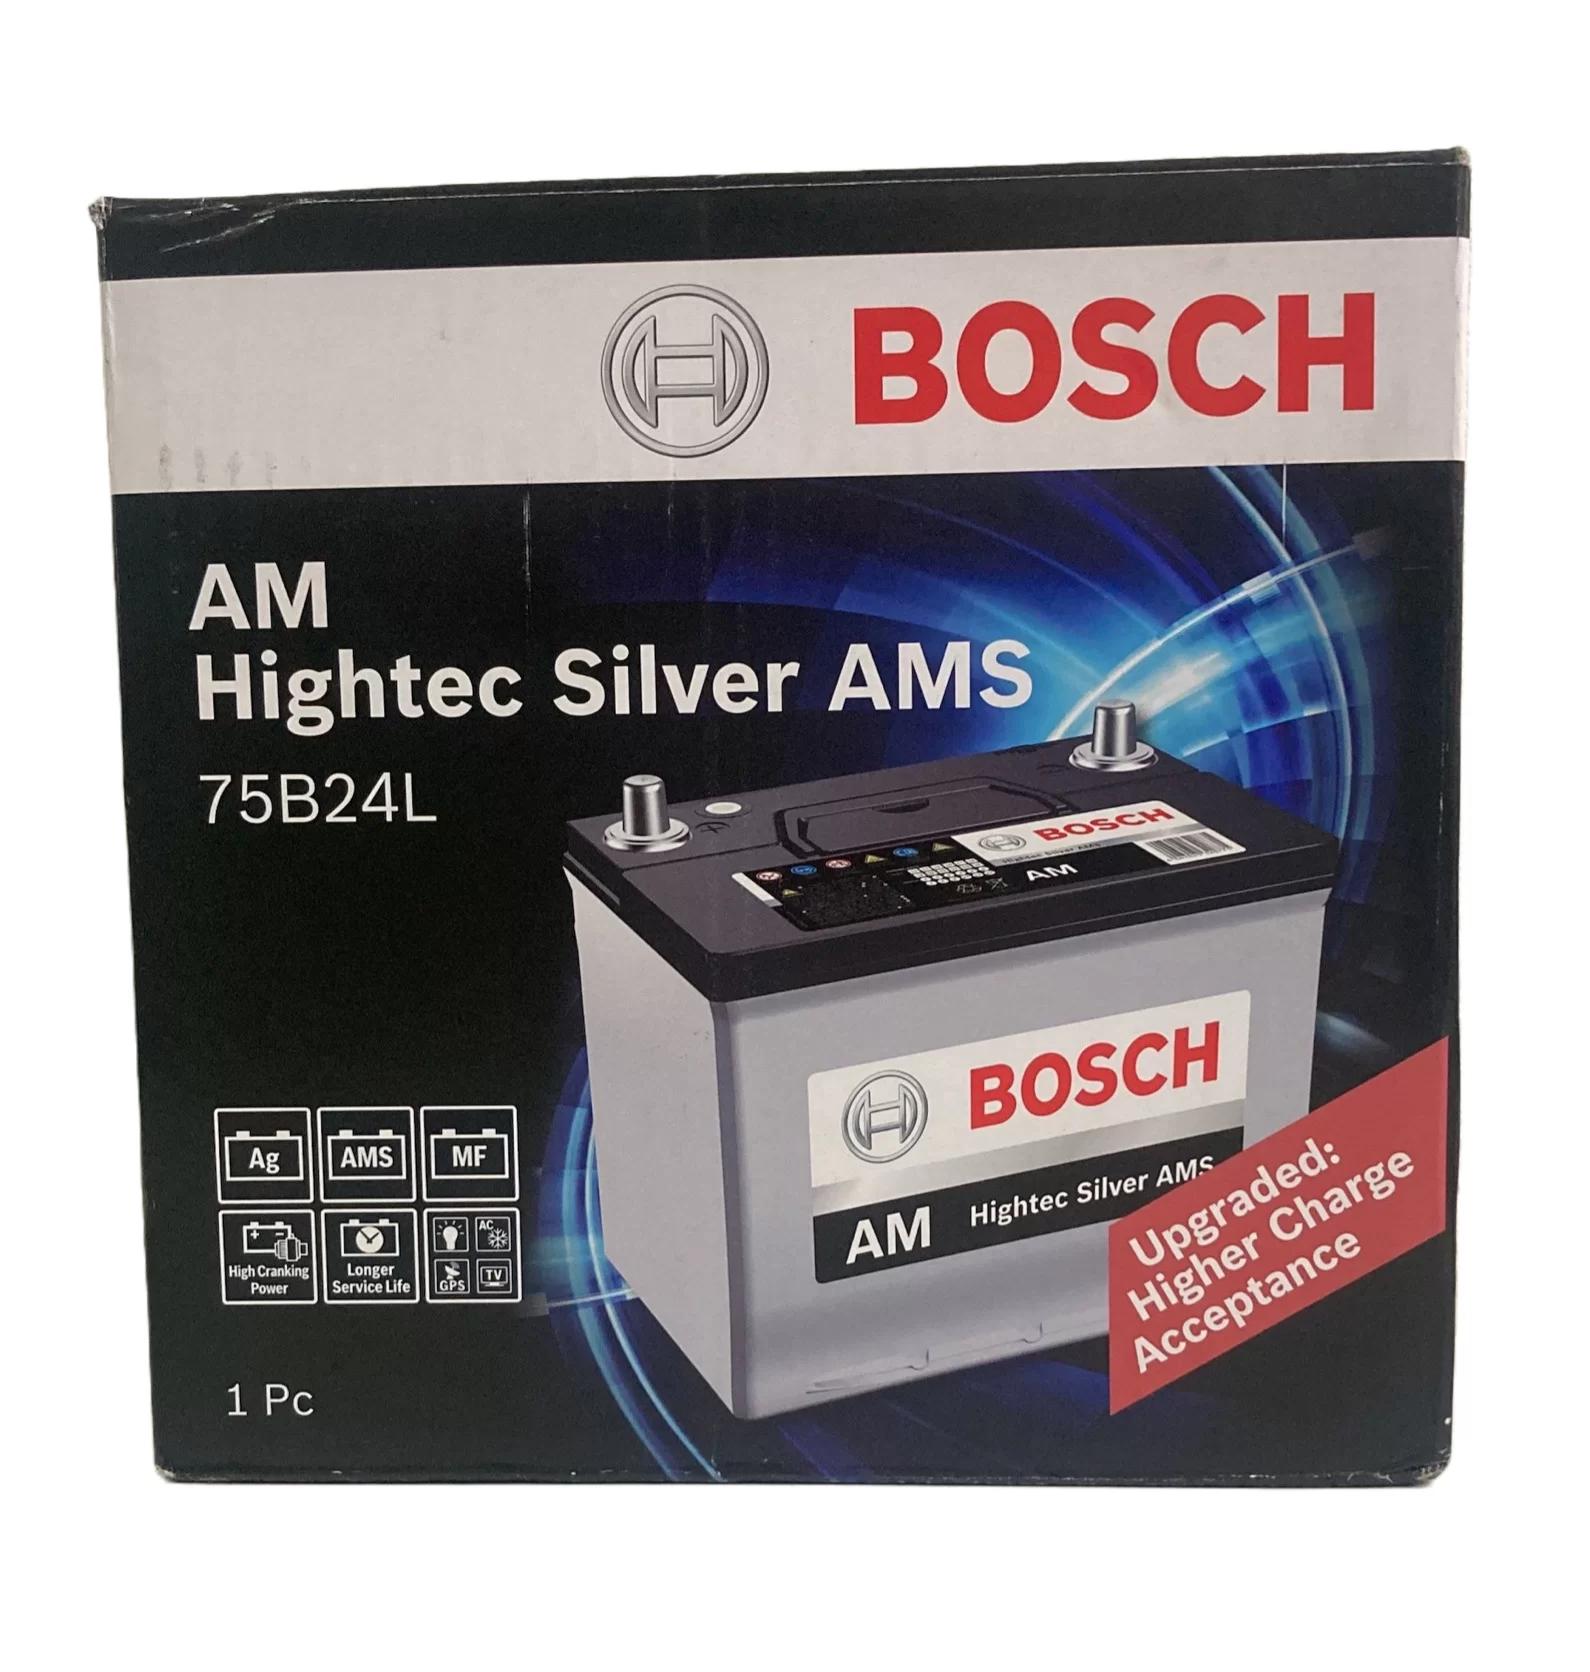 baterias bosch servicio tecnico - Qué servicios ofrece Bosch